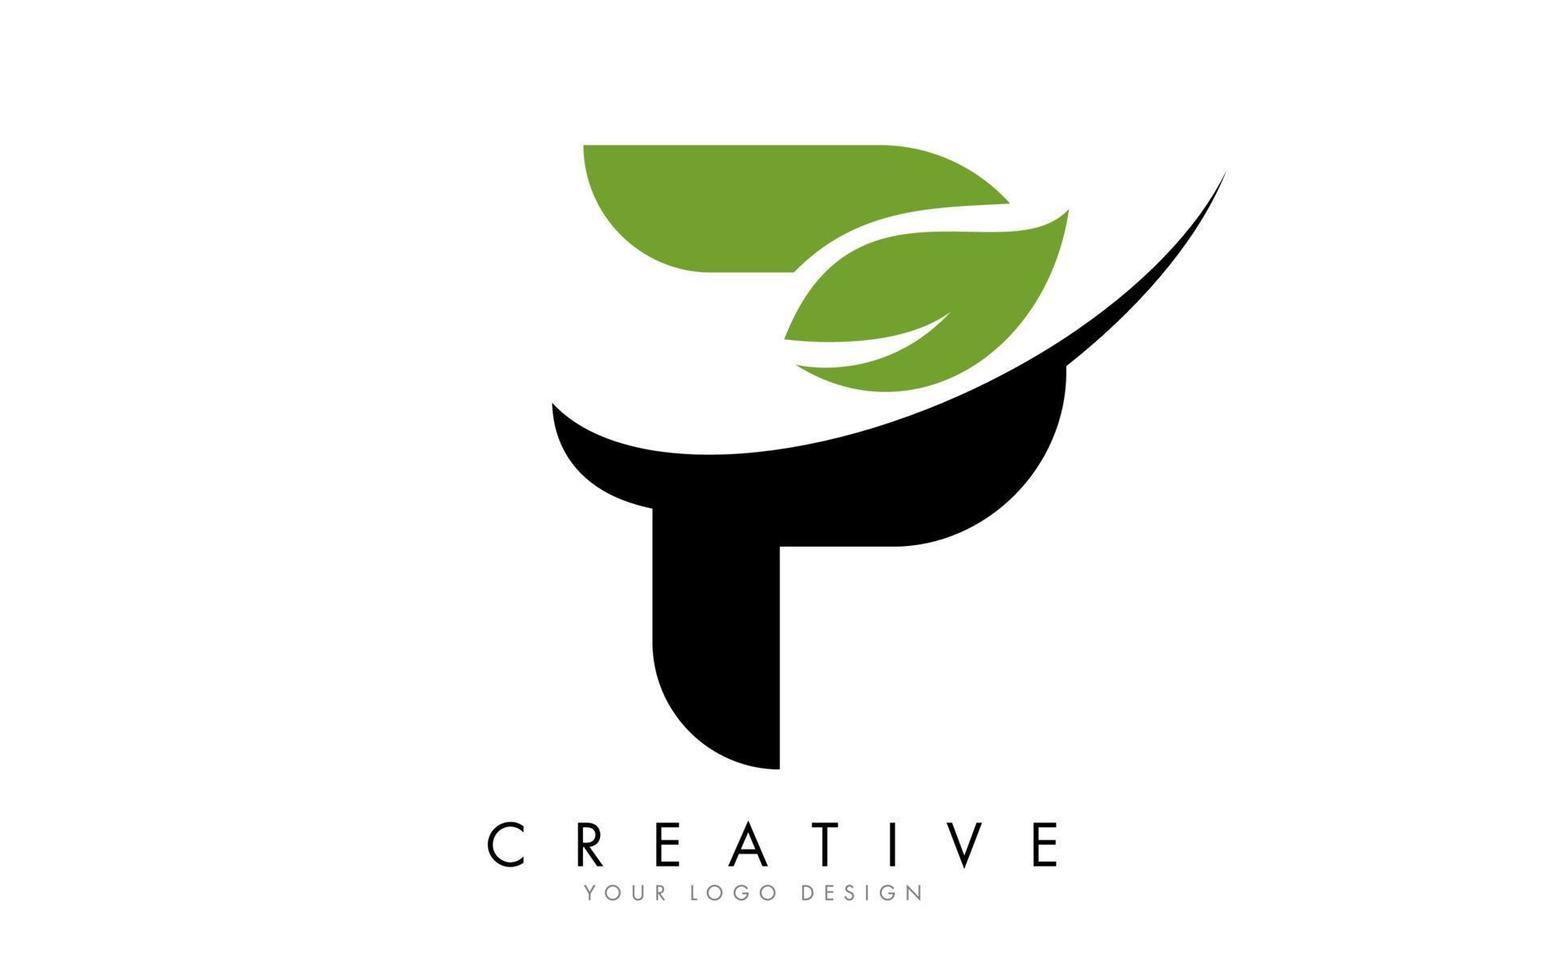 Buchstabe p mit Blatt und kreativem Swoosh-Logo-Design. vektor